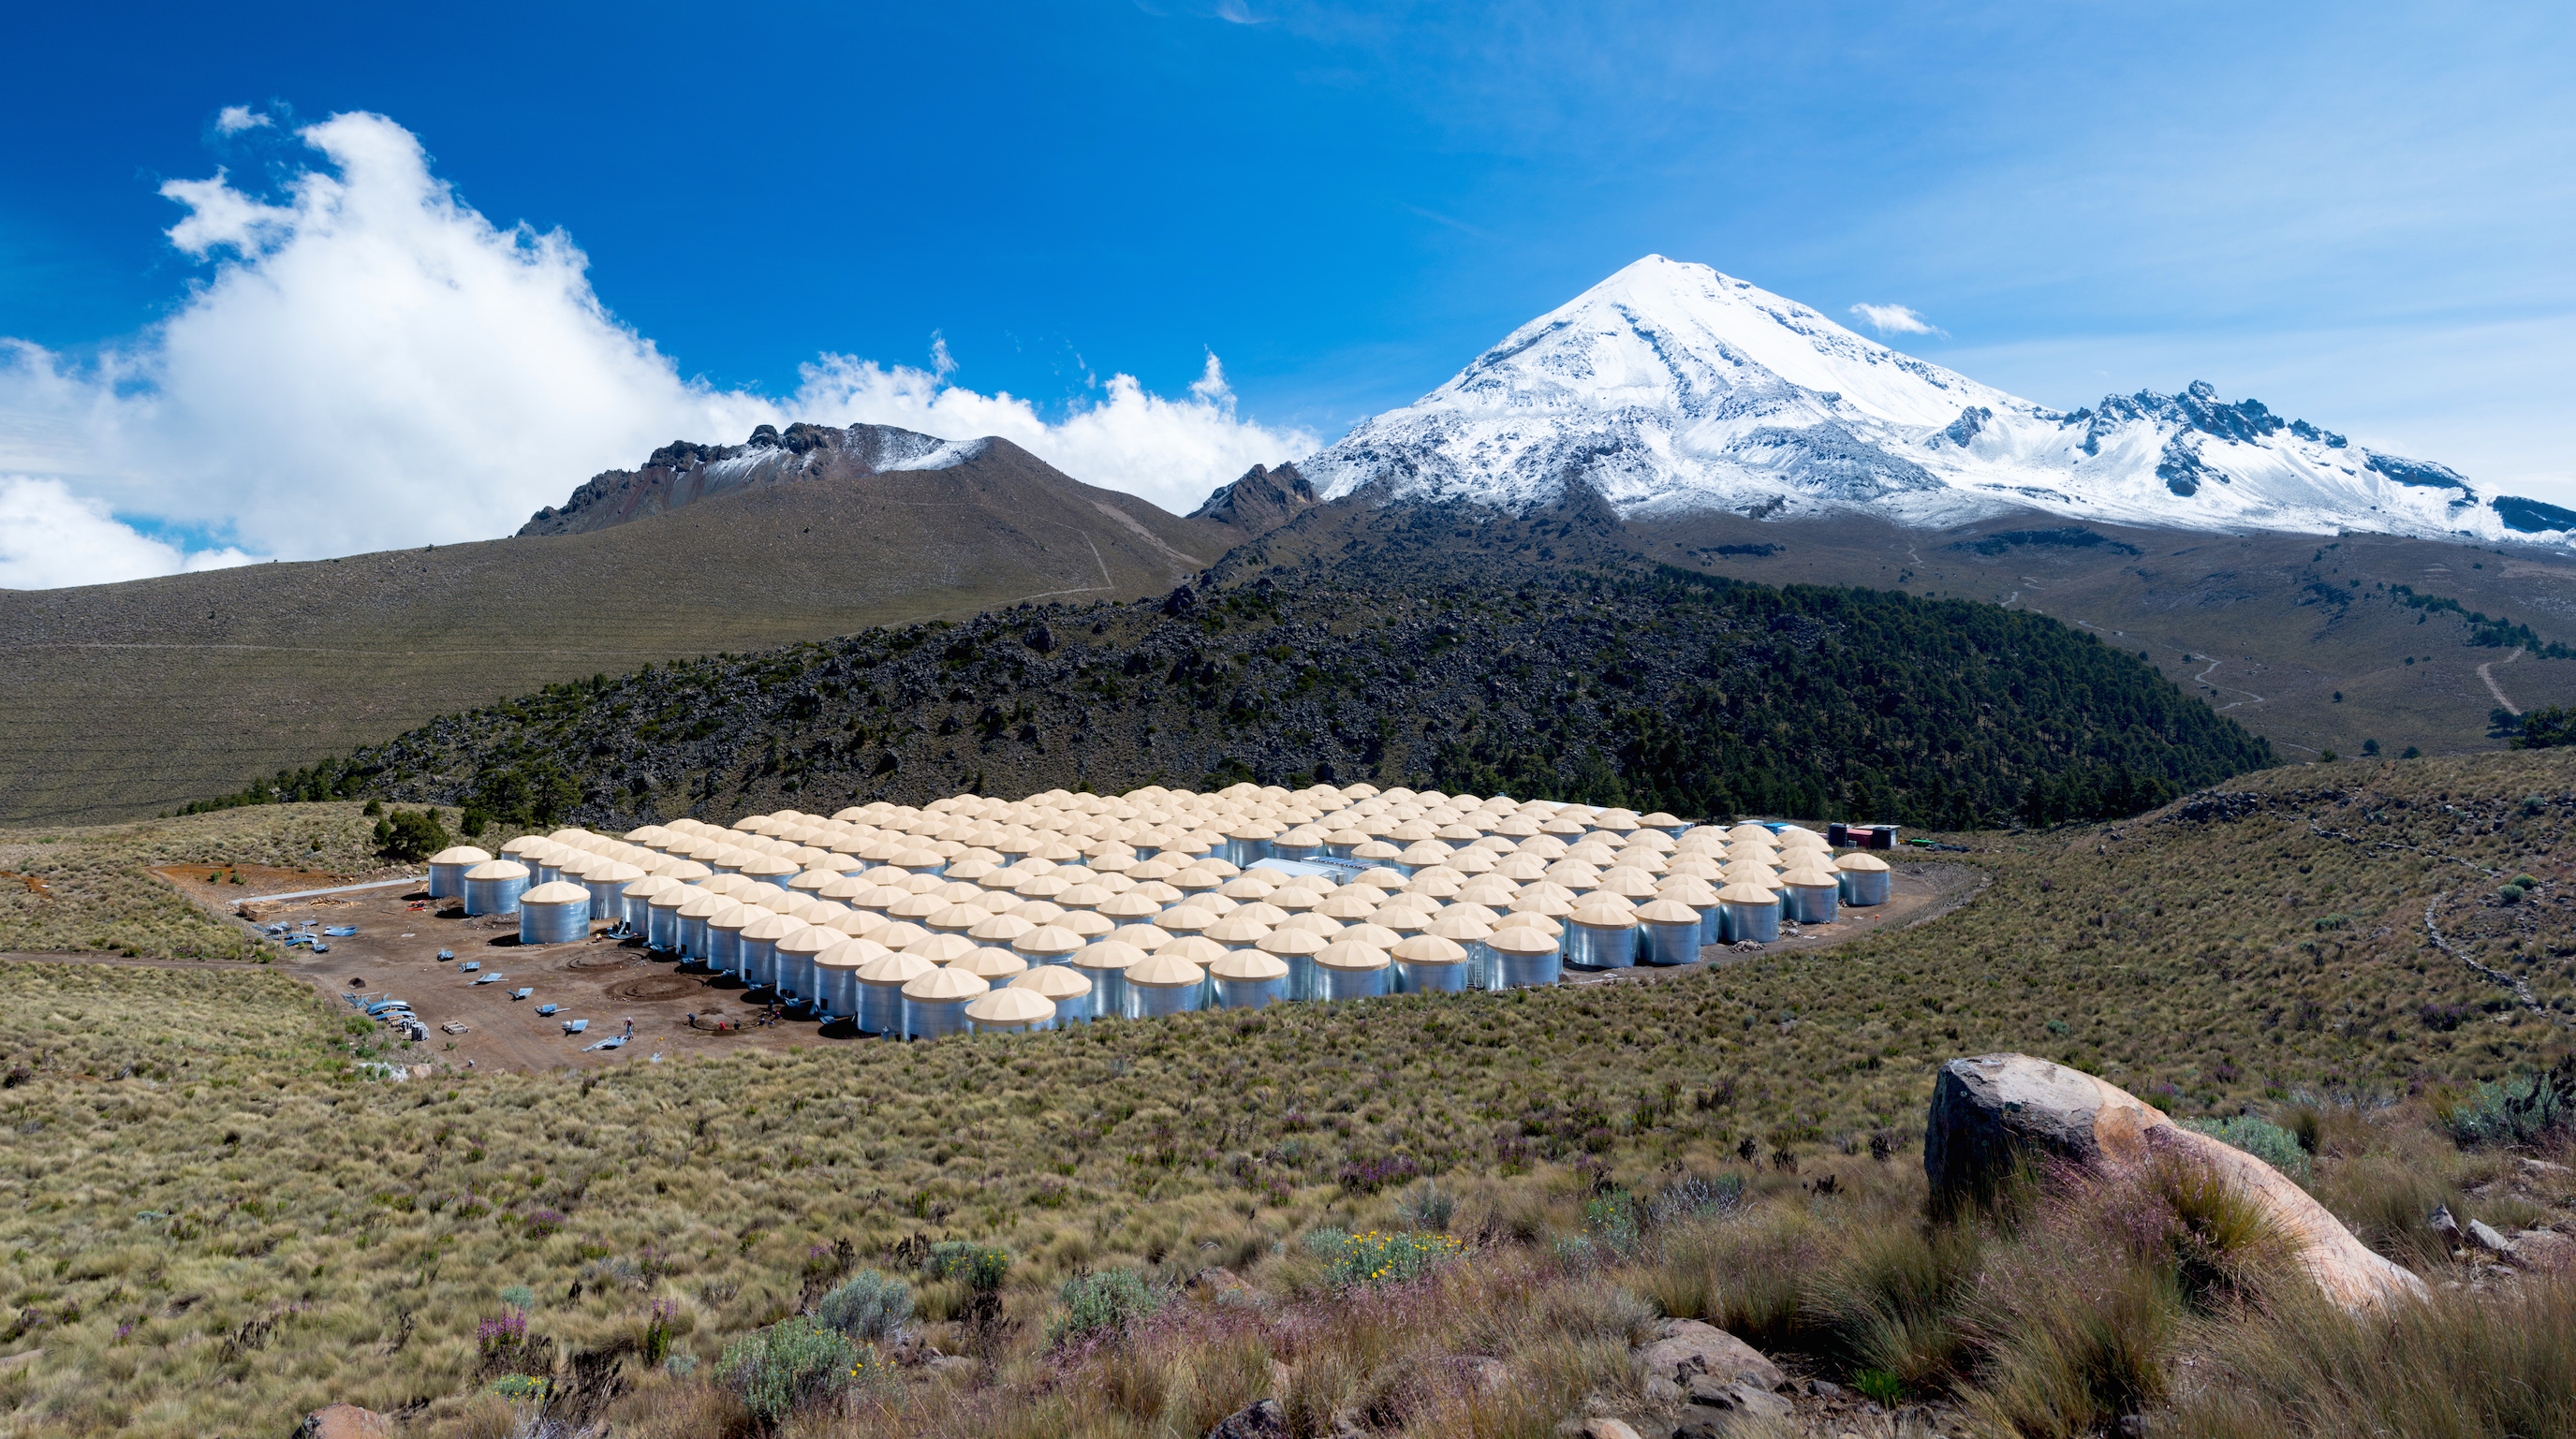 Vysokoenergetická astrofyzika vysoko v horách. Každý z tanků obsahuje 188 000 litrů vody. Kredit: Jordanagoodman / Wikimedia Commons.